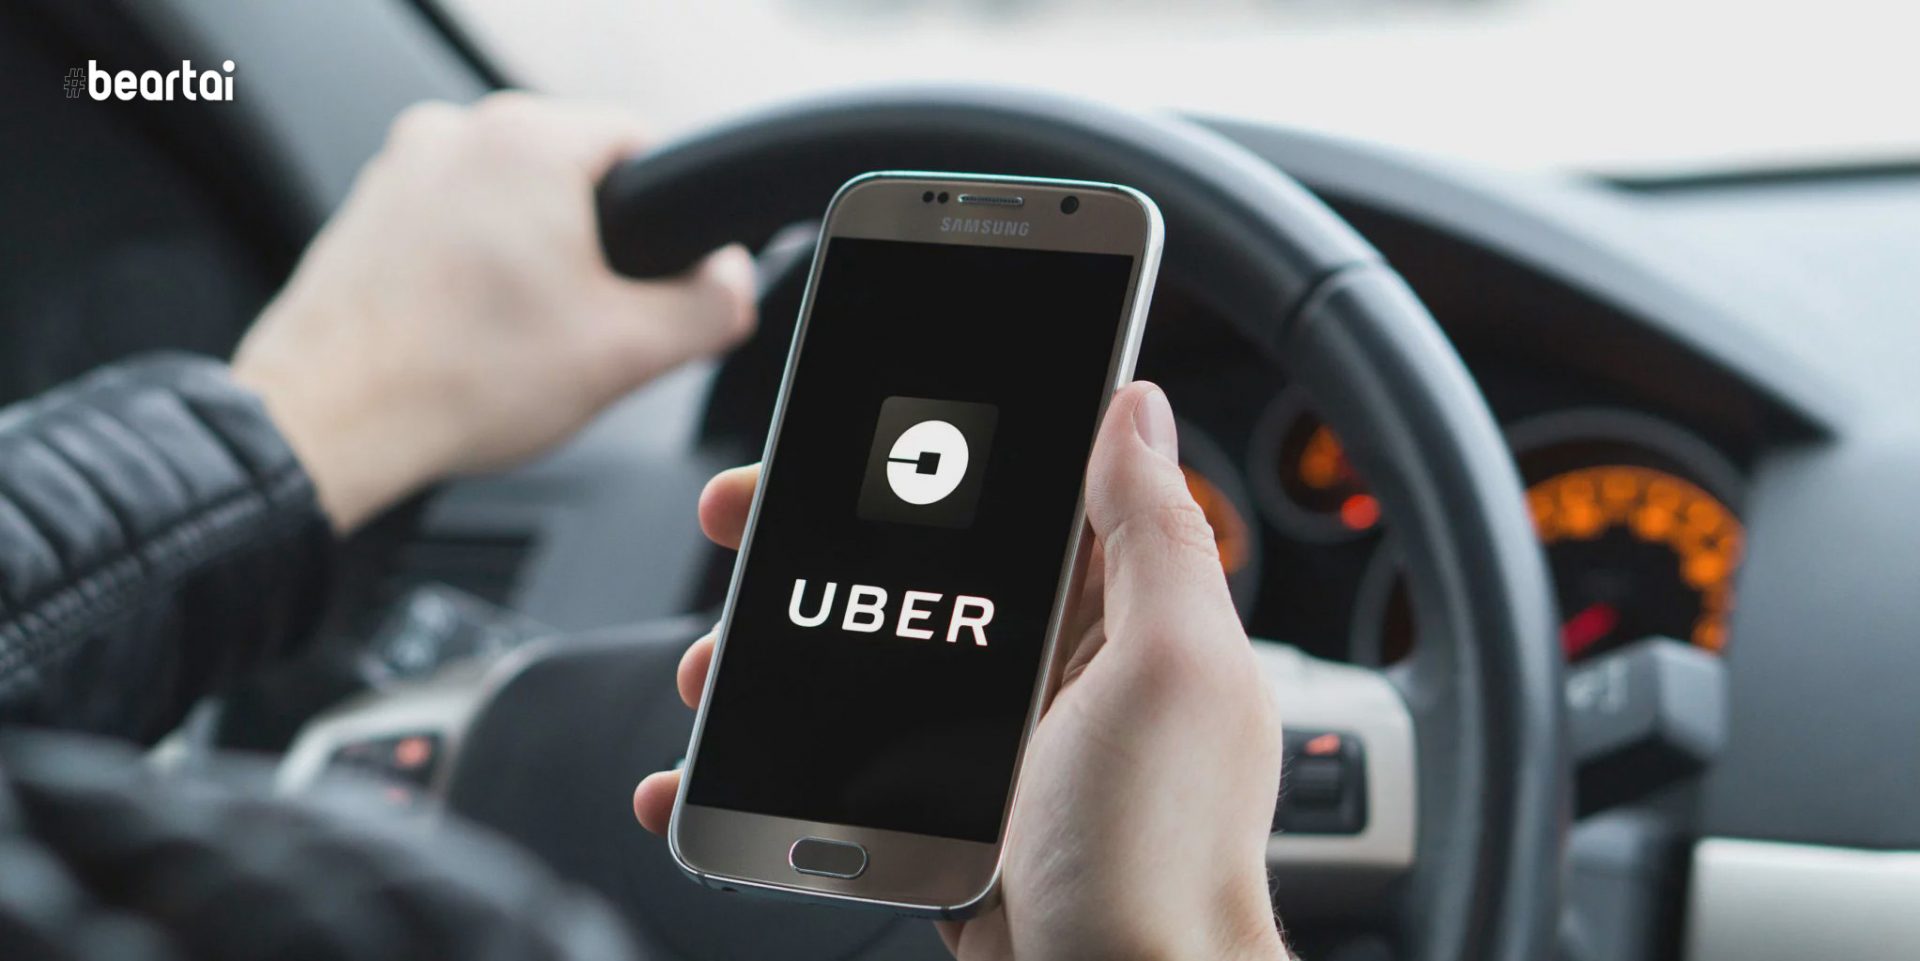 Uber กำลังใช้สมาร์ตโฟนของผู้โดยสารและคนขับตรวจจับความผิดพลาดเมื่อเกิดเหตุรถชนเพื่อเข้าช่วยเหลือฉุกเฉิน